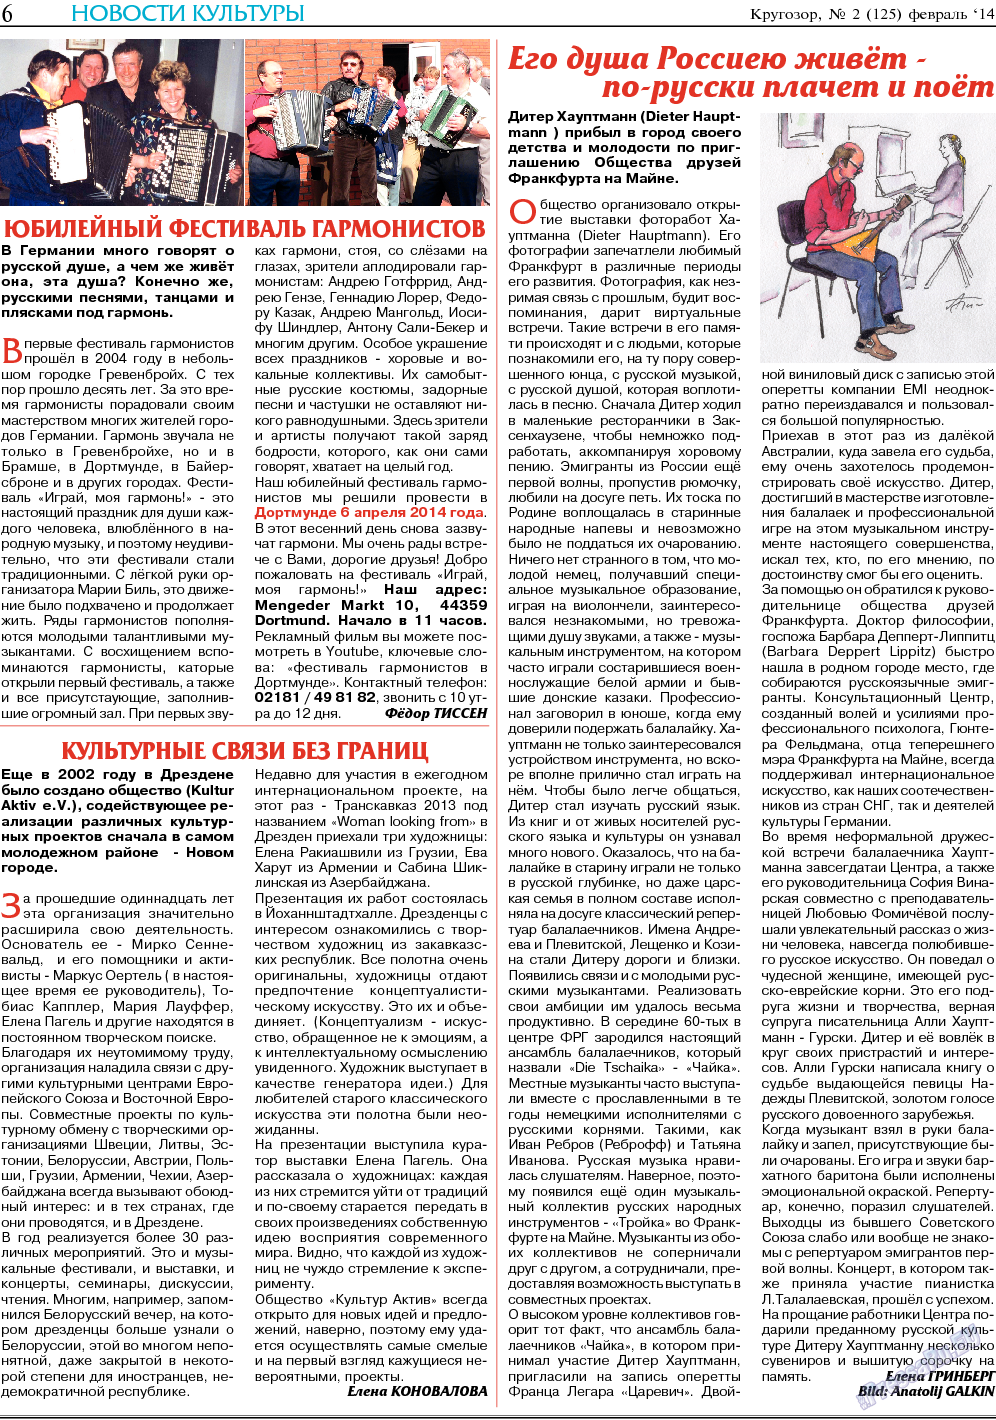 Кругозор (газета). 2014 год, номер 2, стр. 6